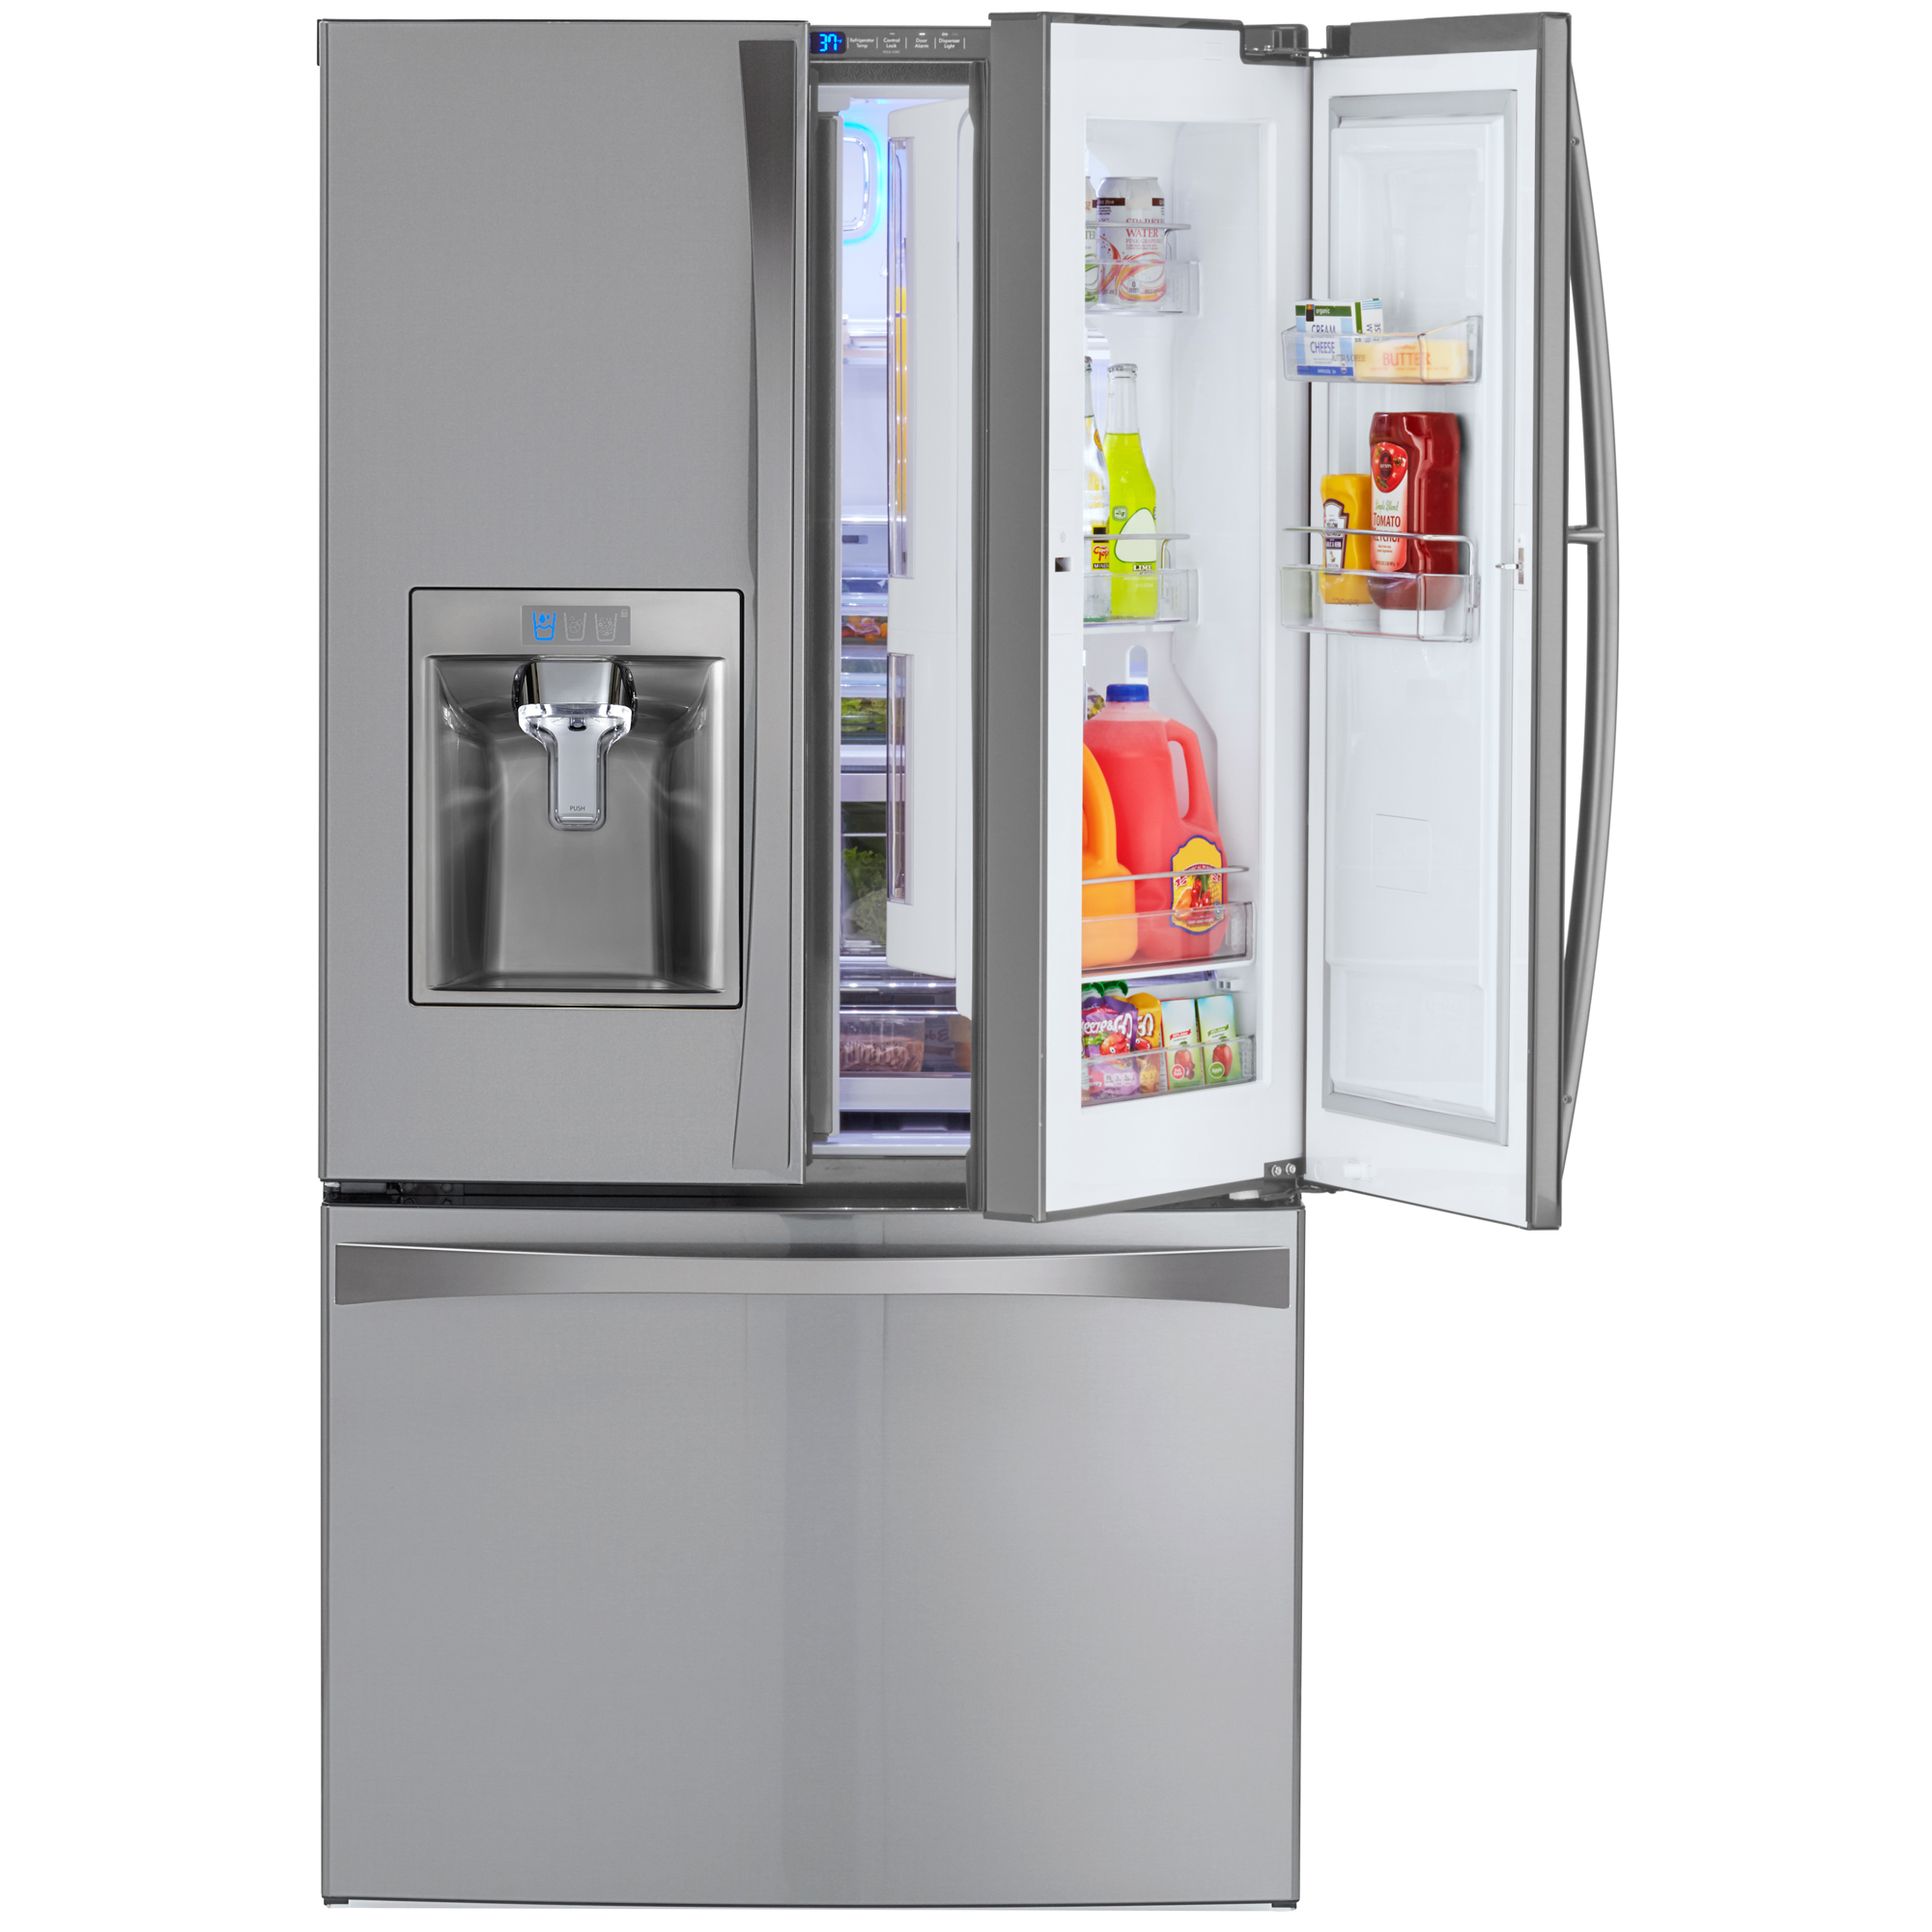 Kenmore Elite 73165 28.5 cu. ft. French Door Bottom Freezer Refrigerator with Grab-N-Go Door, Fingerprint Resistant Stainless Steel